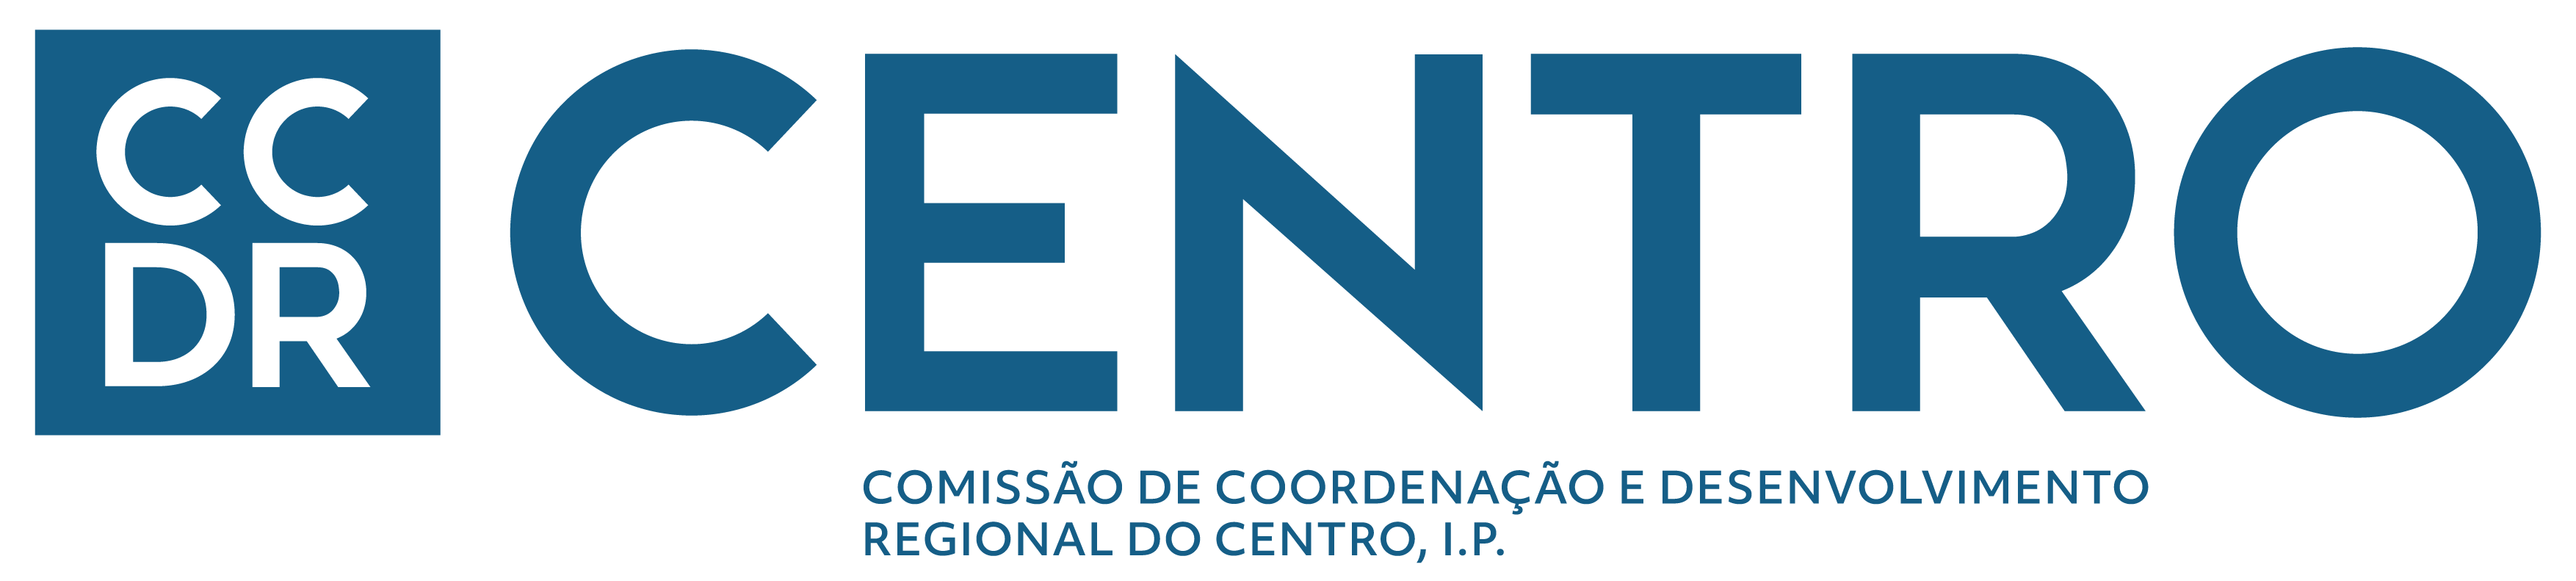 Logotipo da Comissão de Coordenação e Desenvolvimento Regional do Centro